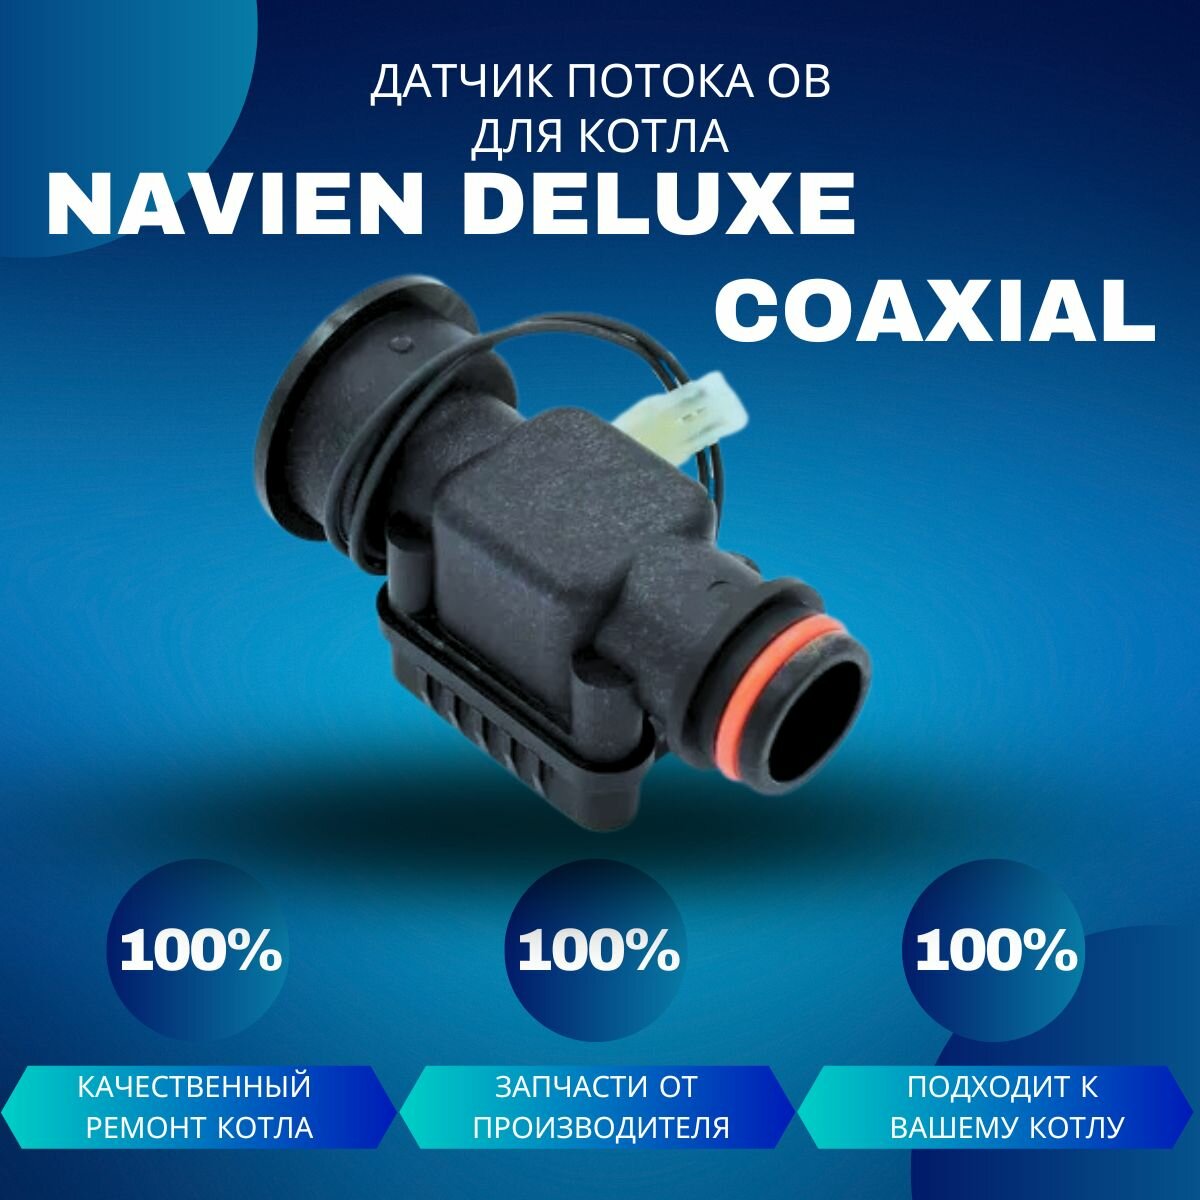 Датчик потока ОВ для котла Navien Deluxe Coaxial